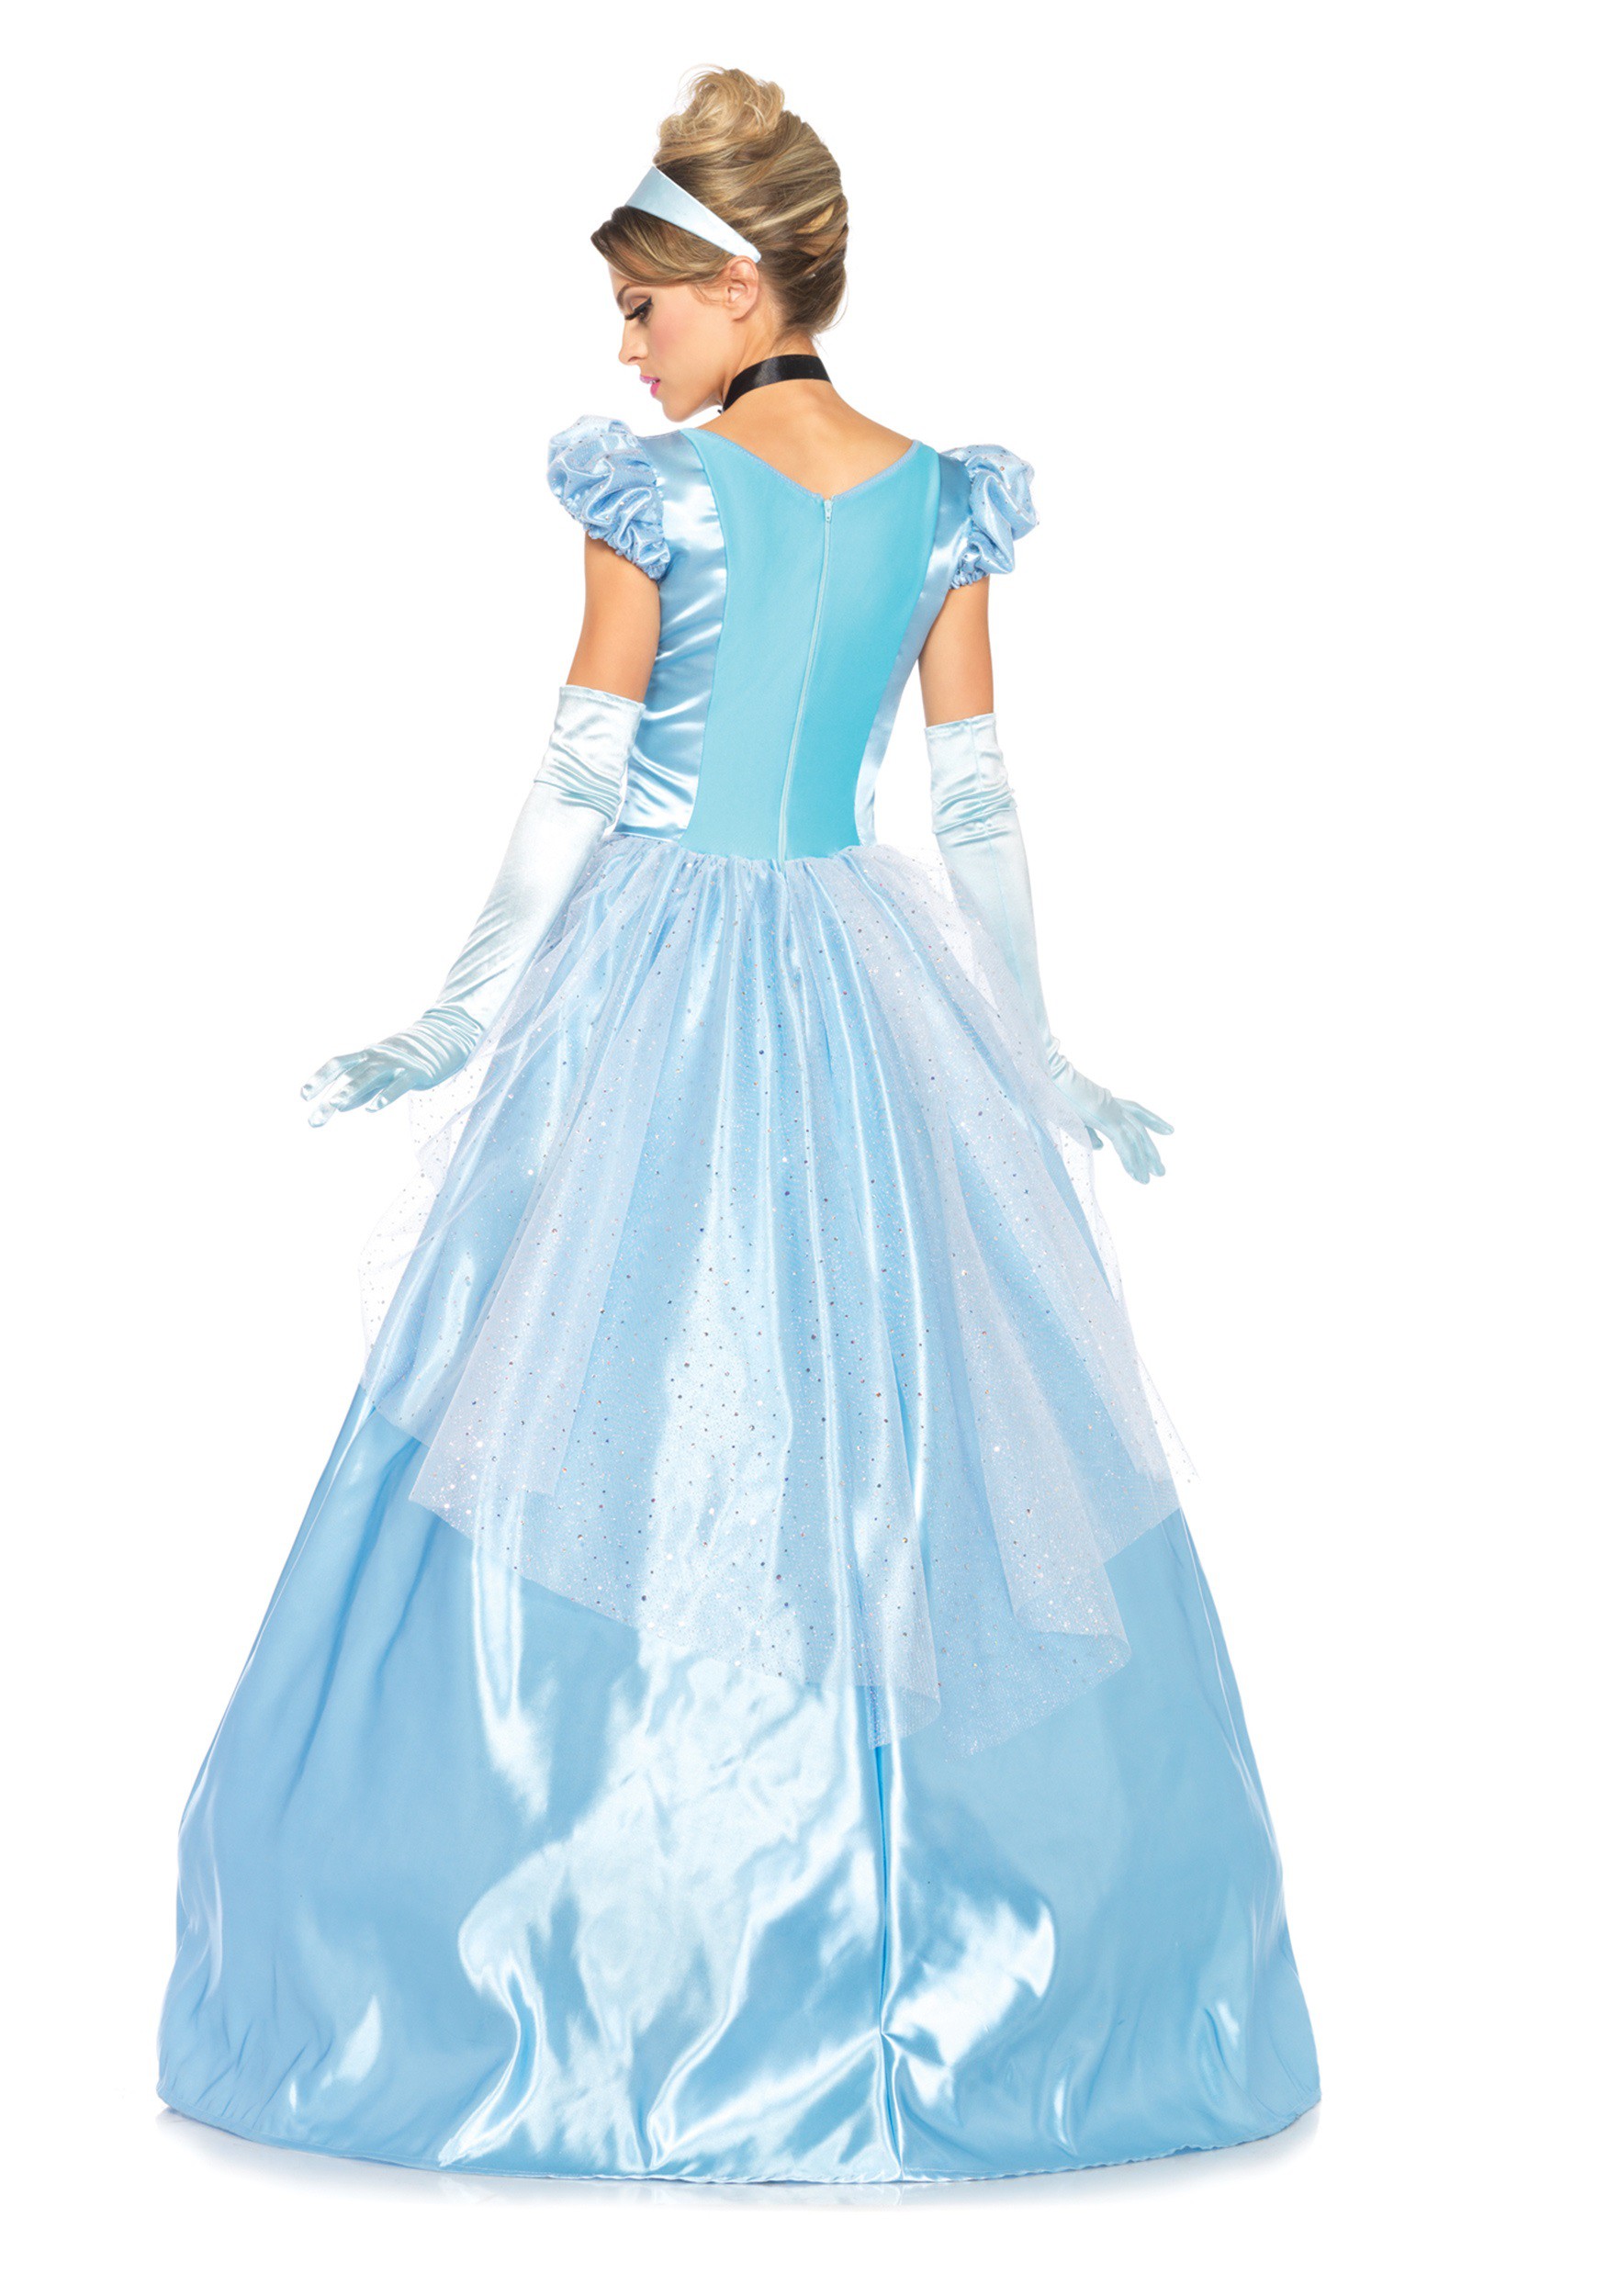 Cinderella Costume: Classic Full Length ...